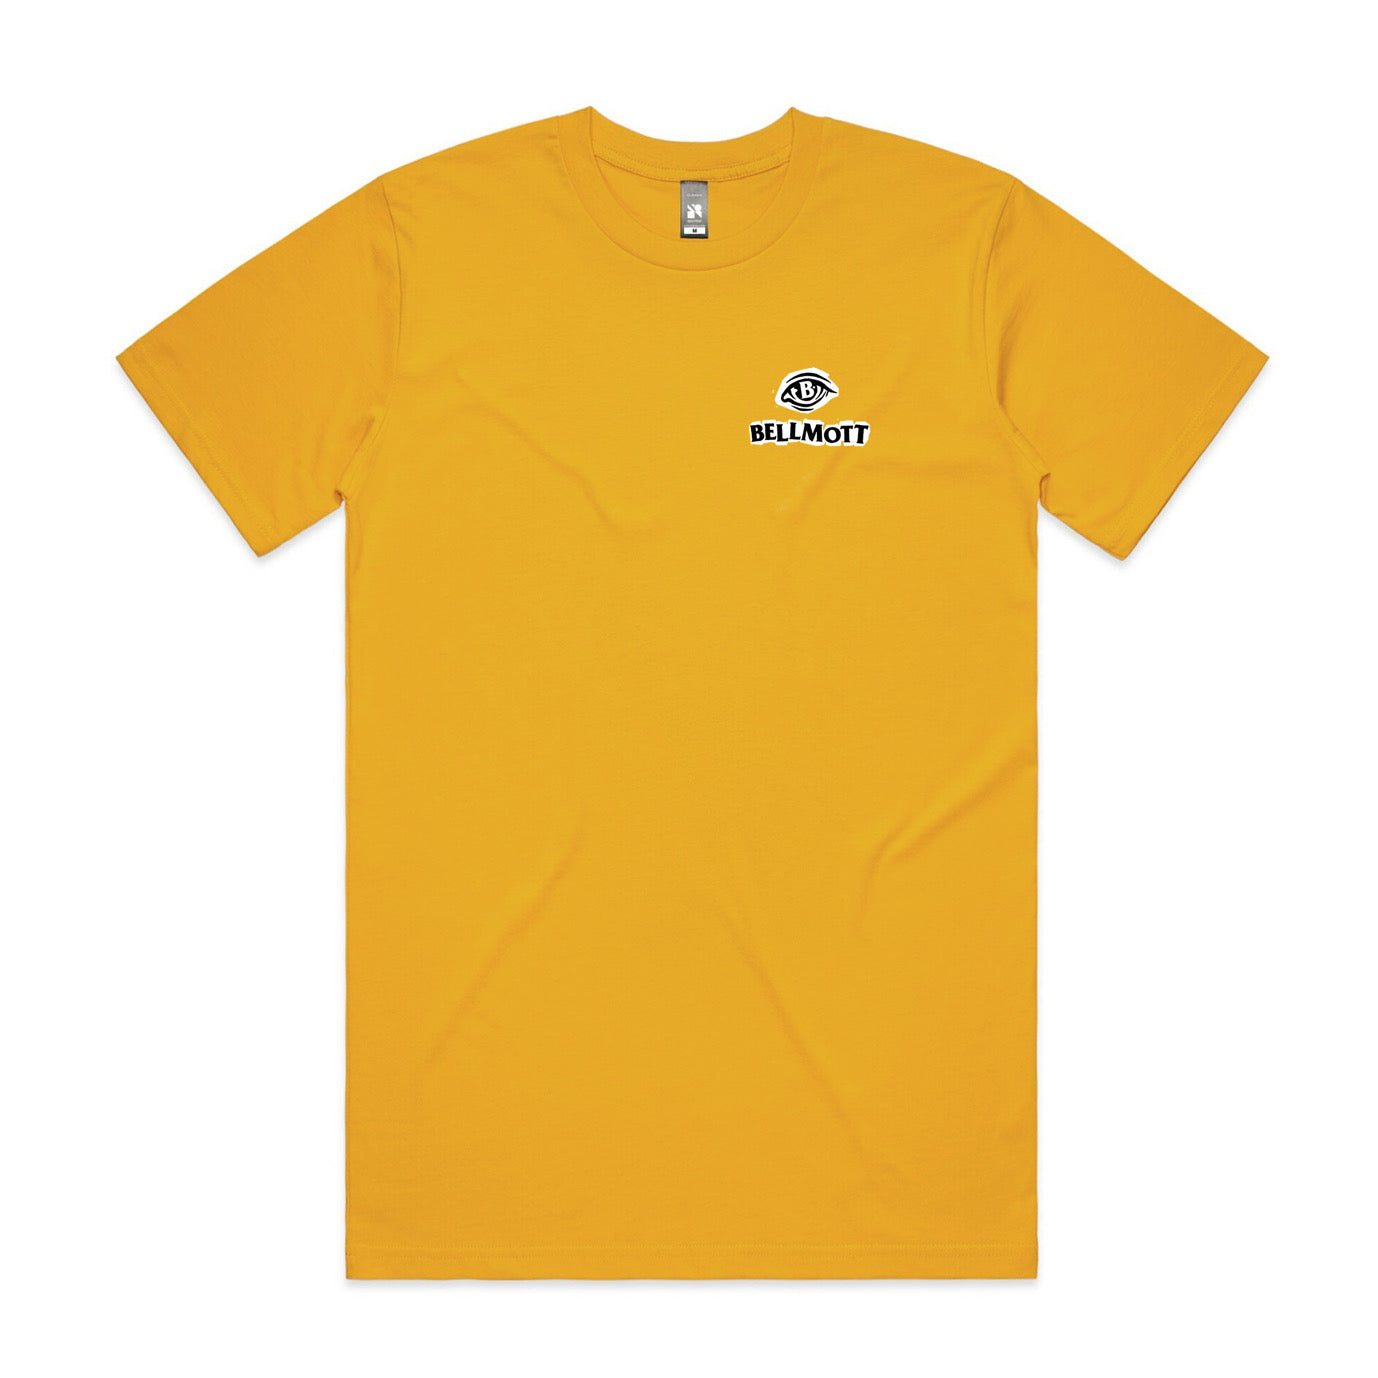 Yellow t shirt with Bellmott Screenprint